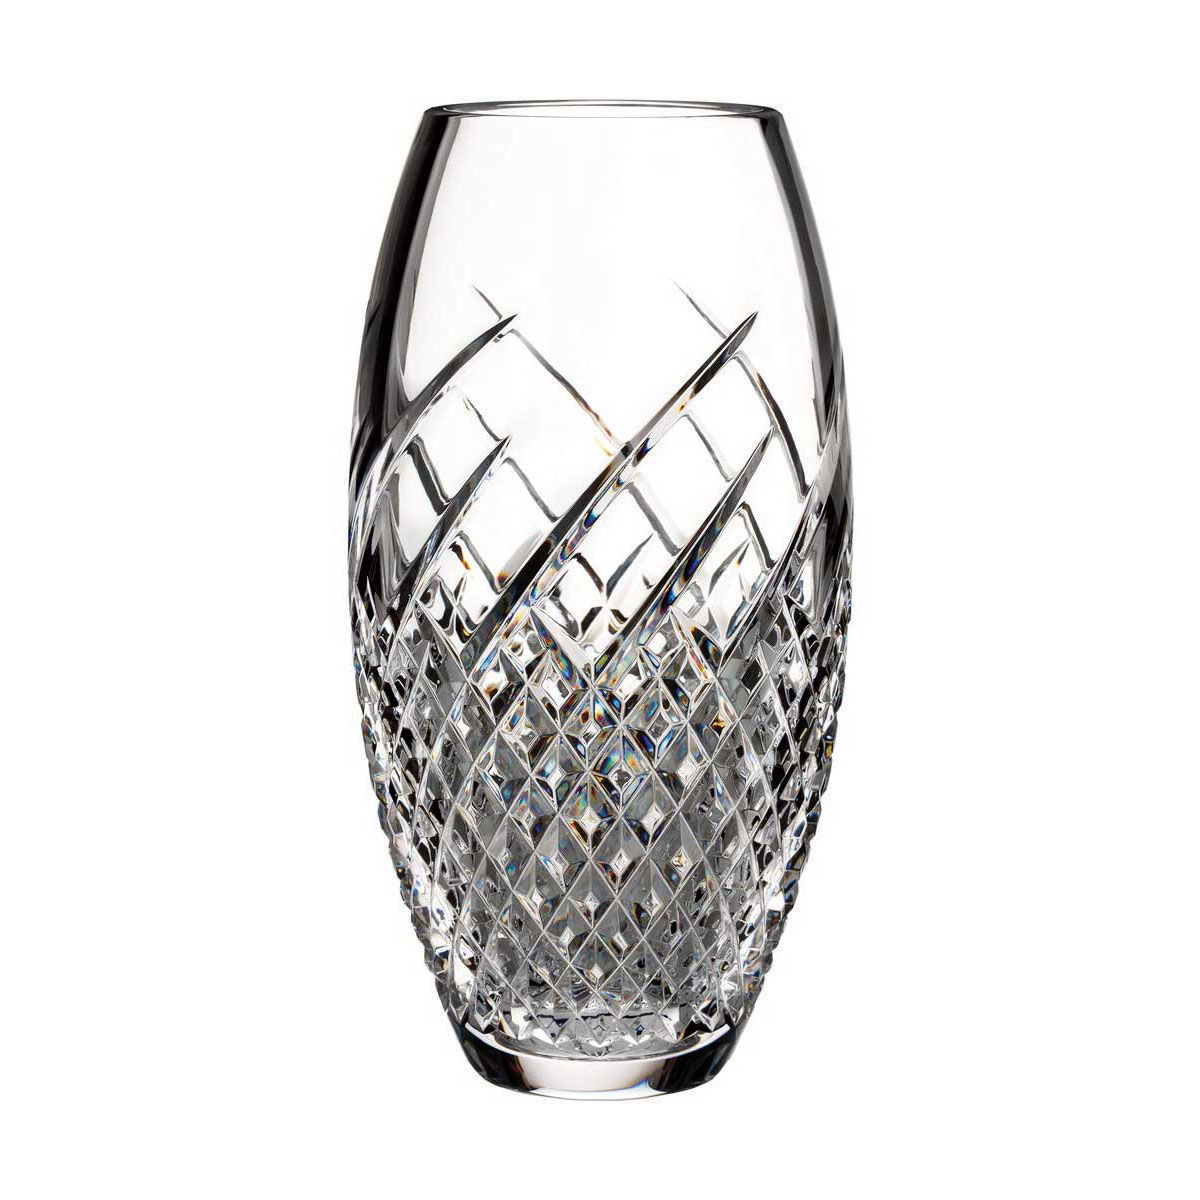 Waterford Crystal, House of Waterford Wild Atlantic Way 10" Crystal Vase